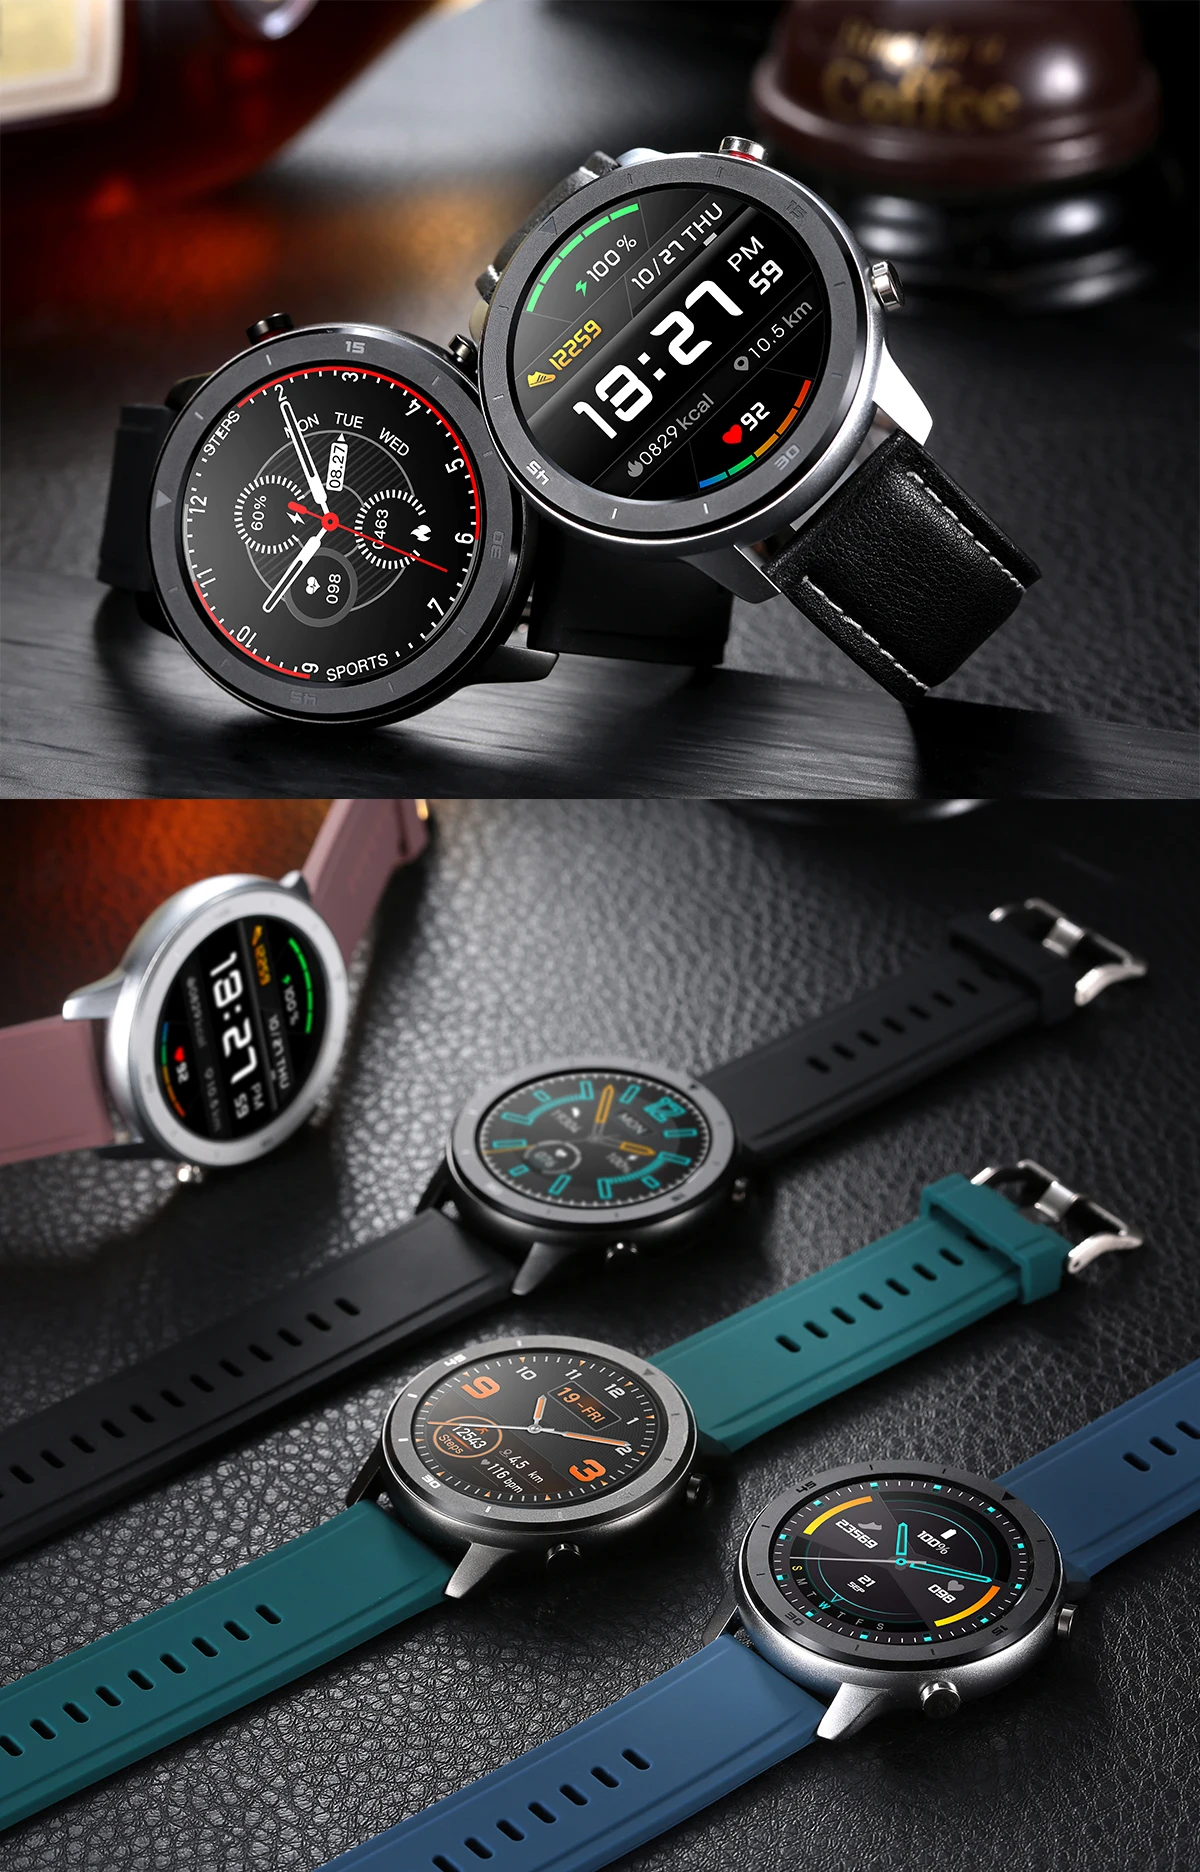 DT78 Смарт-часы для мужчин и женщин, умные часы, браслет, фитнес-трекер, беспроводные устройства, водонепроницаемый монитор сердечного ритма